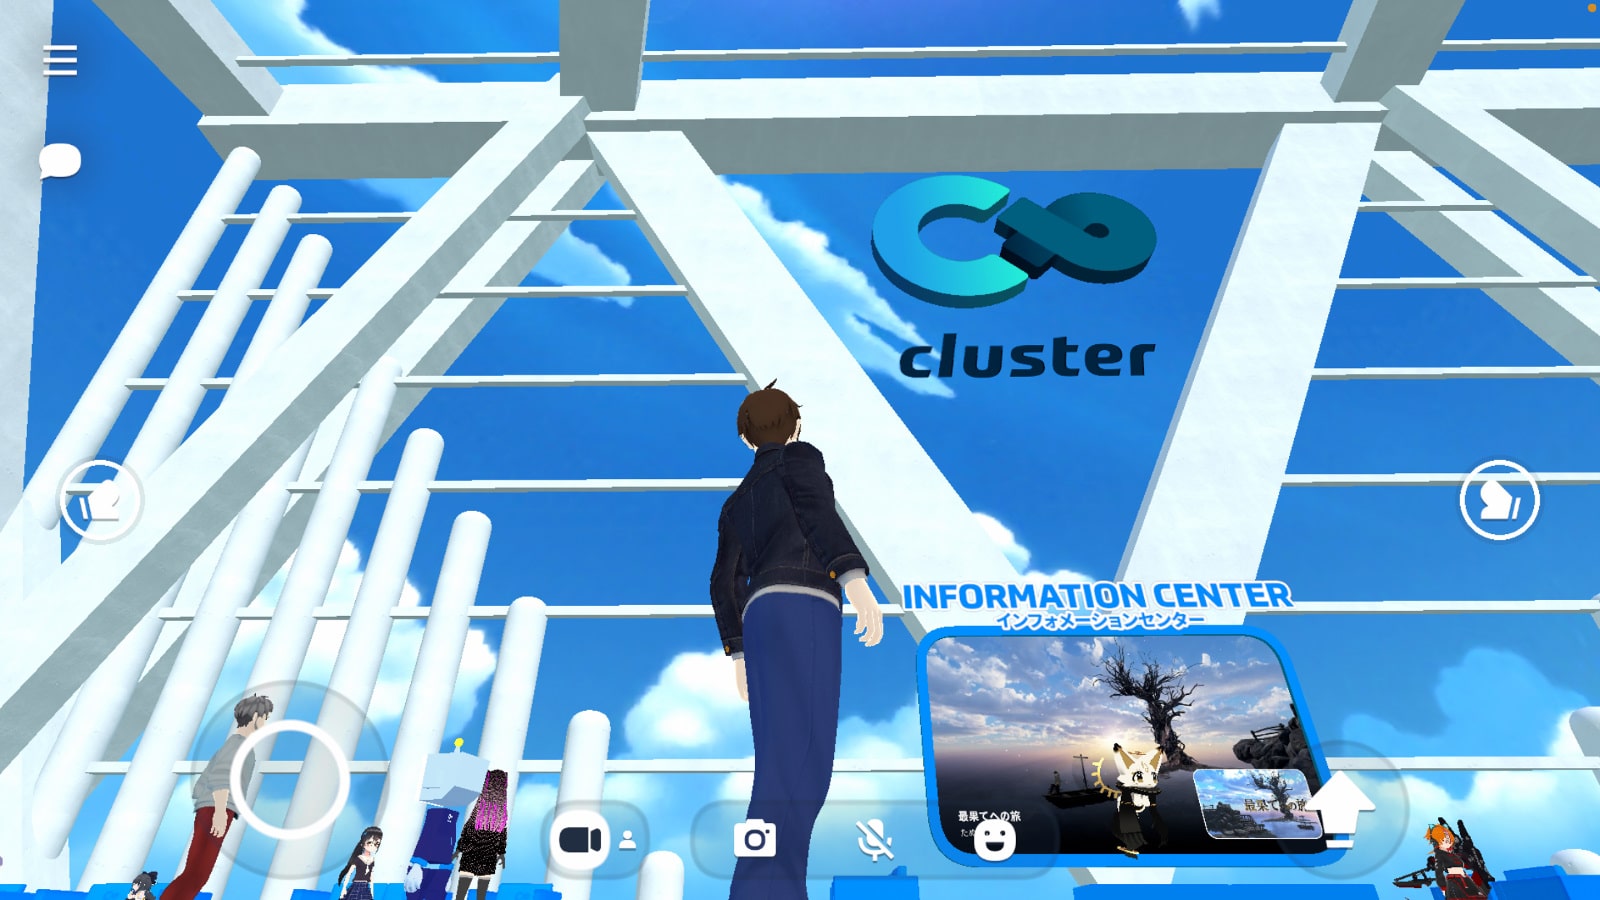 クラスター（cluster）アプリ画像